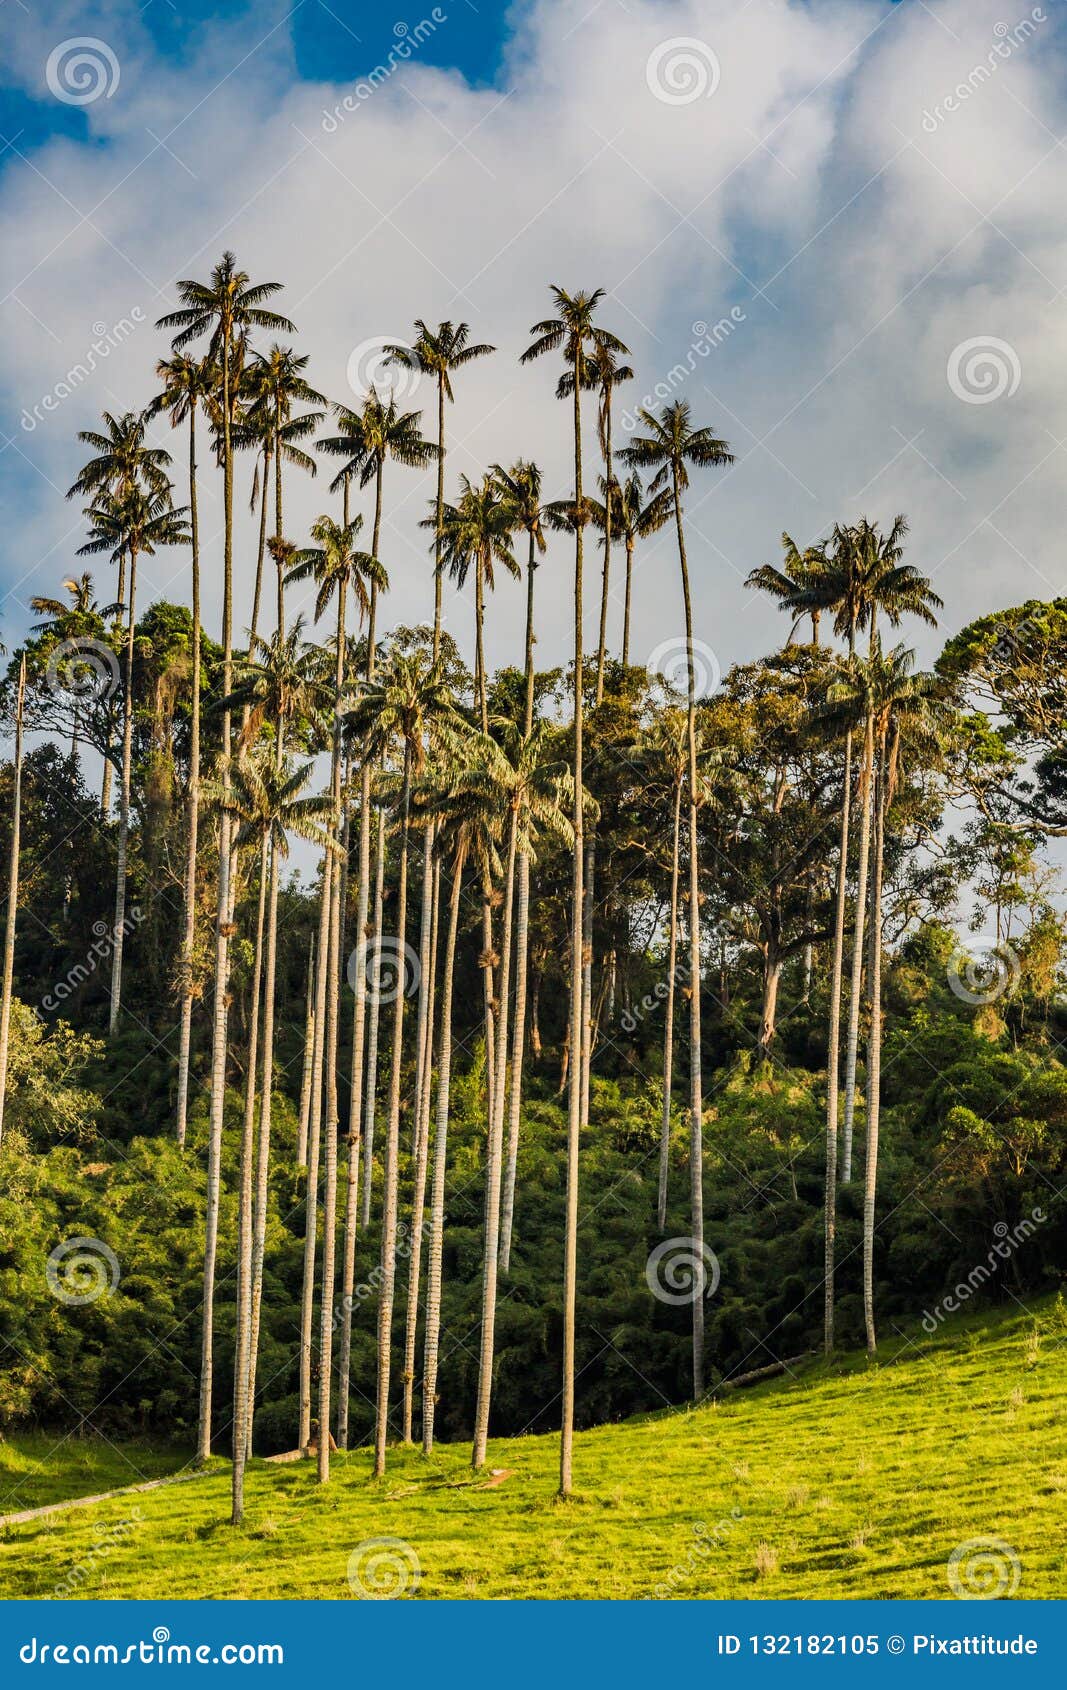 valley cocora salento el bosque de las palmas quindio colombia